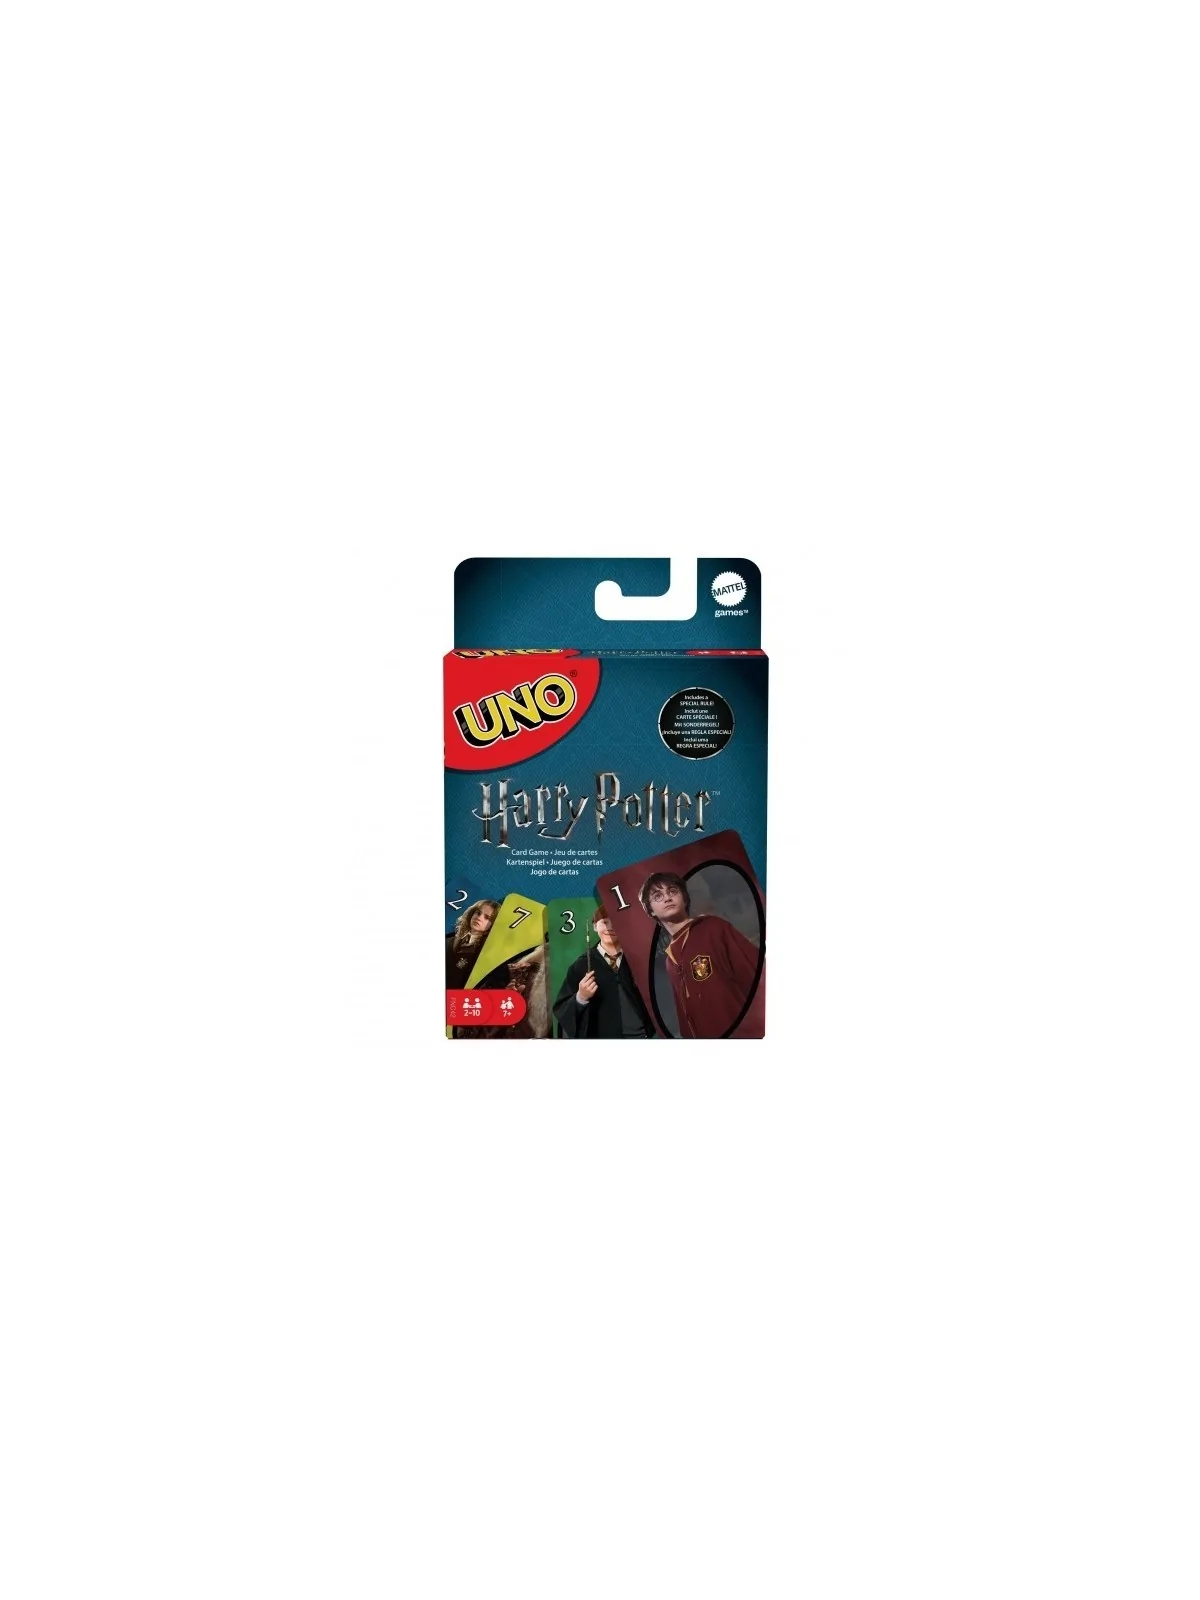 Comprar Juego UNO Harry Potter barato al mejor precio 12,56 € de Matte